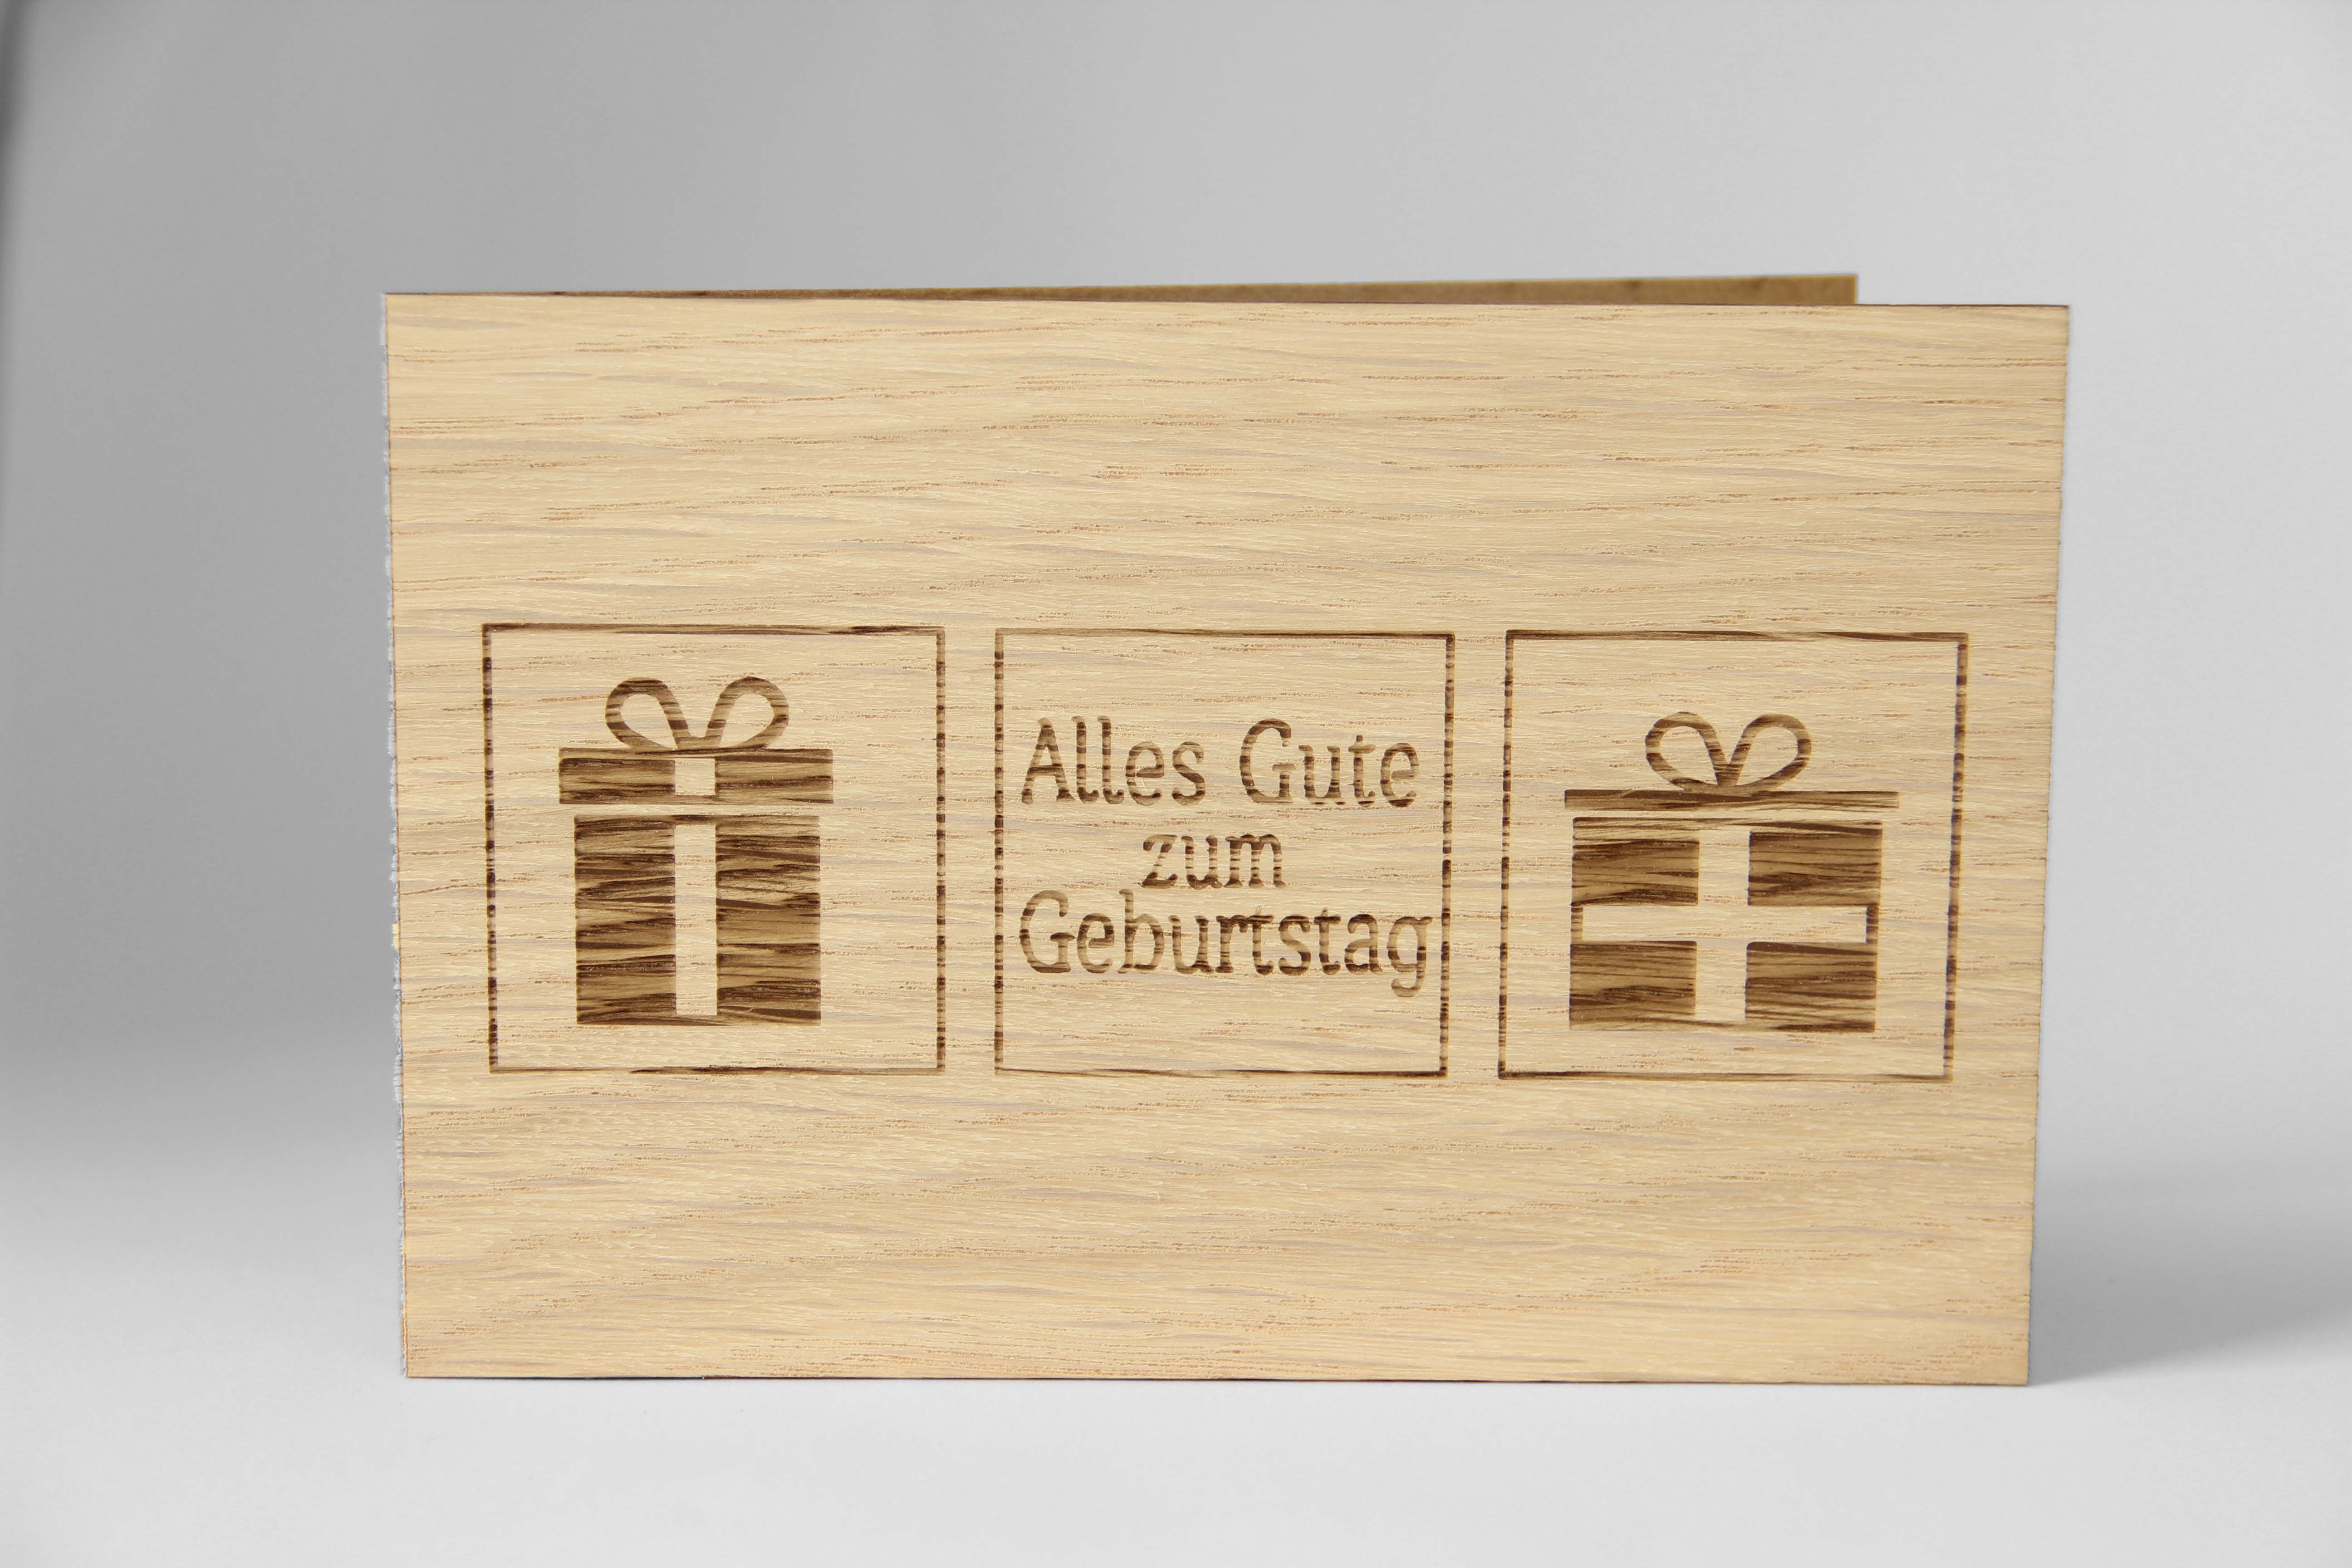 Holzgrusskarten - Geburtstagskarte "Alles Gute zum Geburtstag" mit Geschenkpaketen, aus Eiche